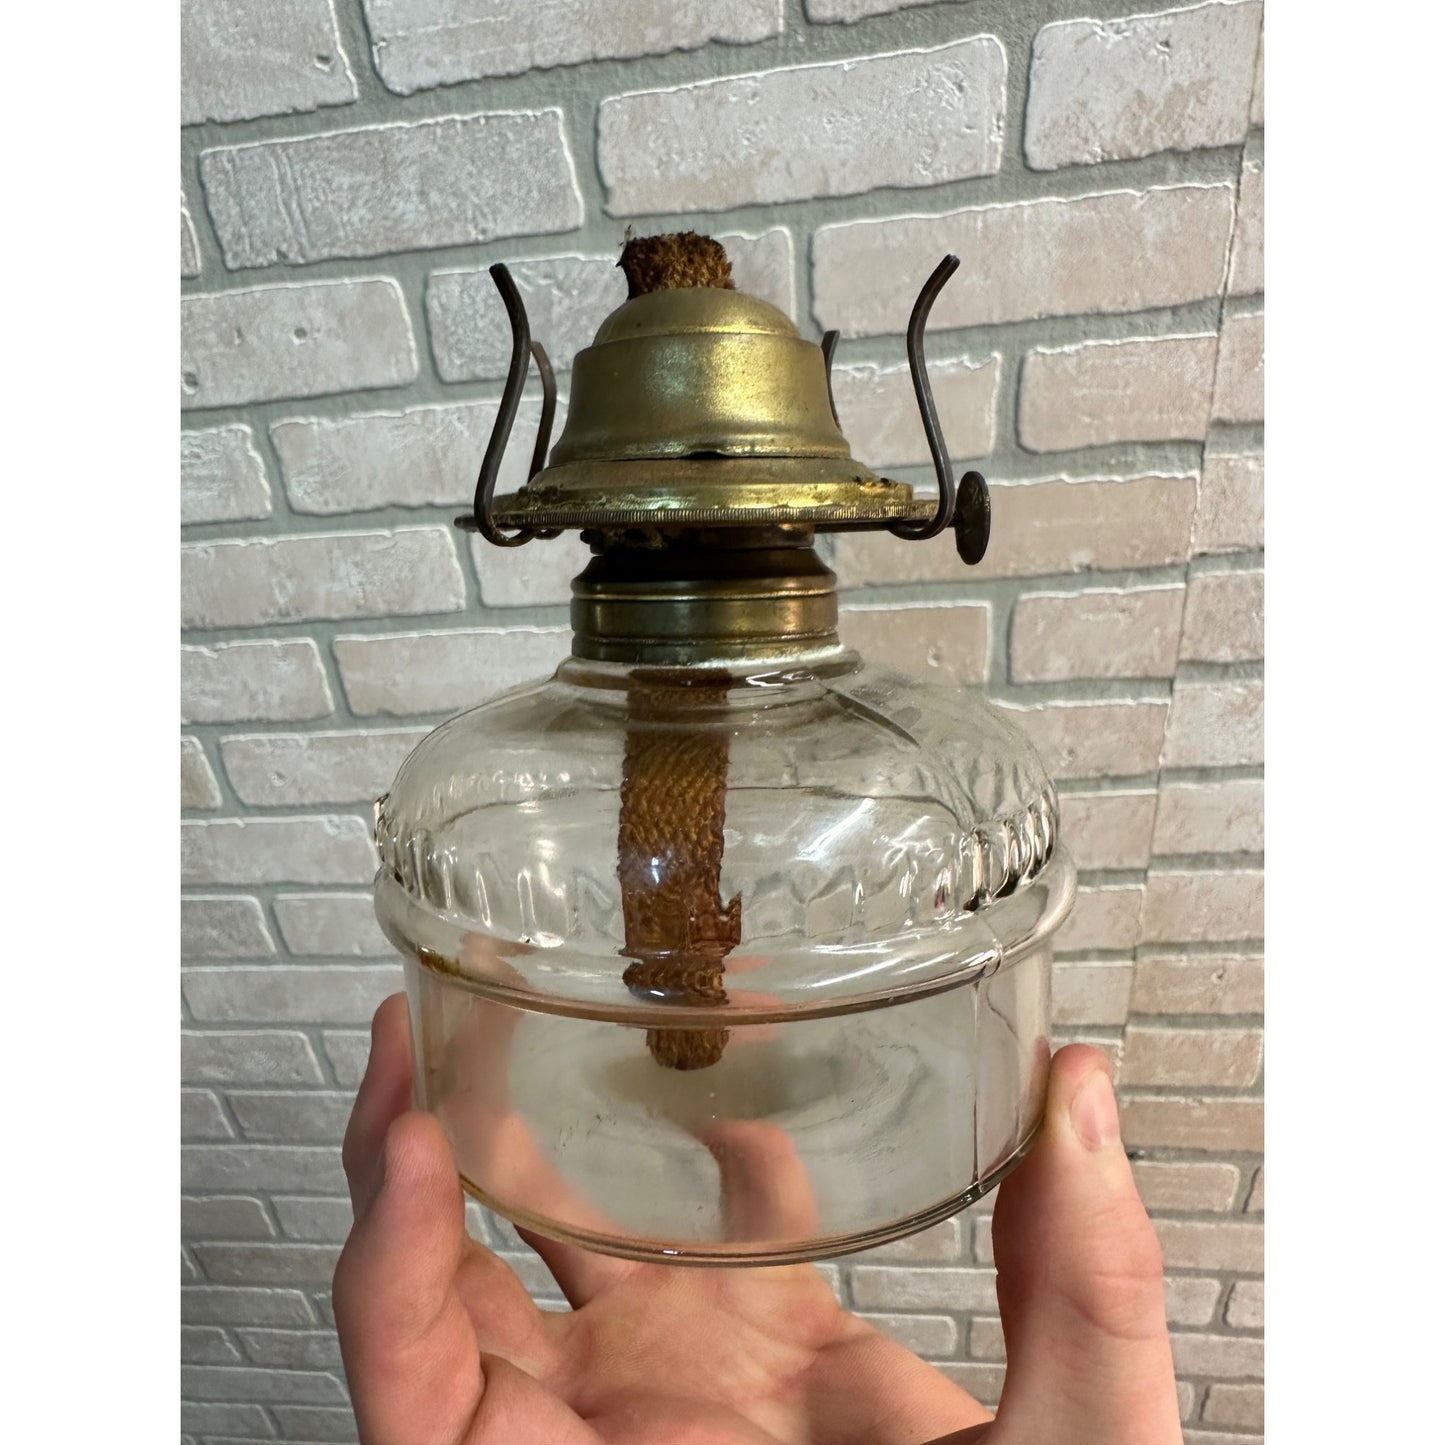 EAGLE OIL LAMP VINTAGE GLASS BASE ONLY WITH BURNER 4" DIA, NO CHIMNEY